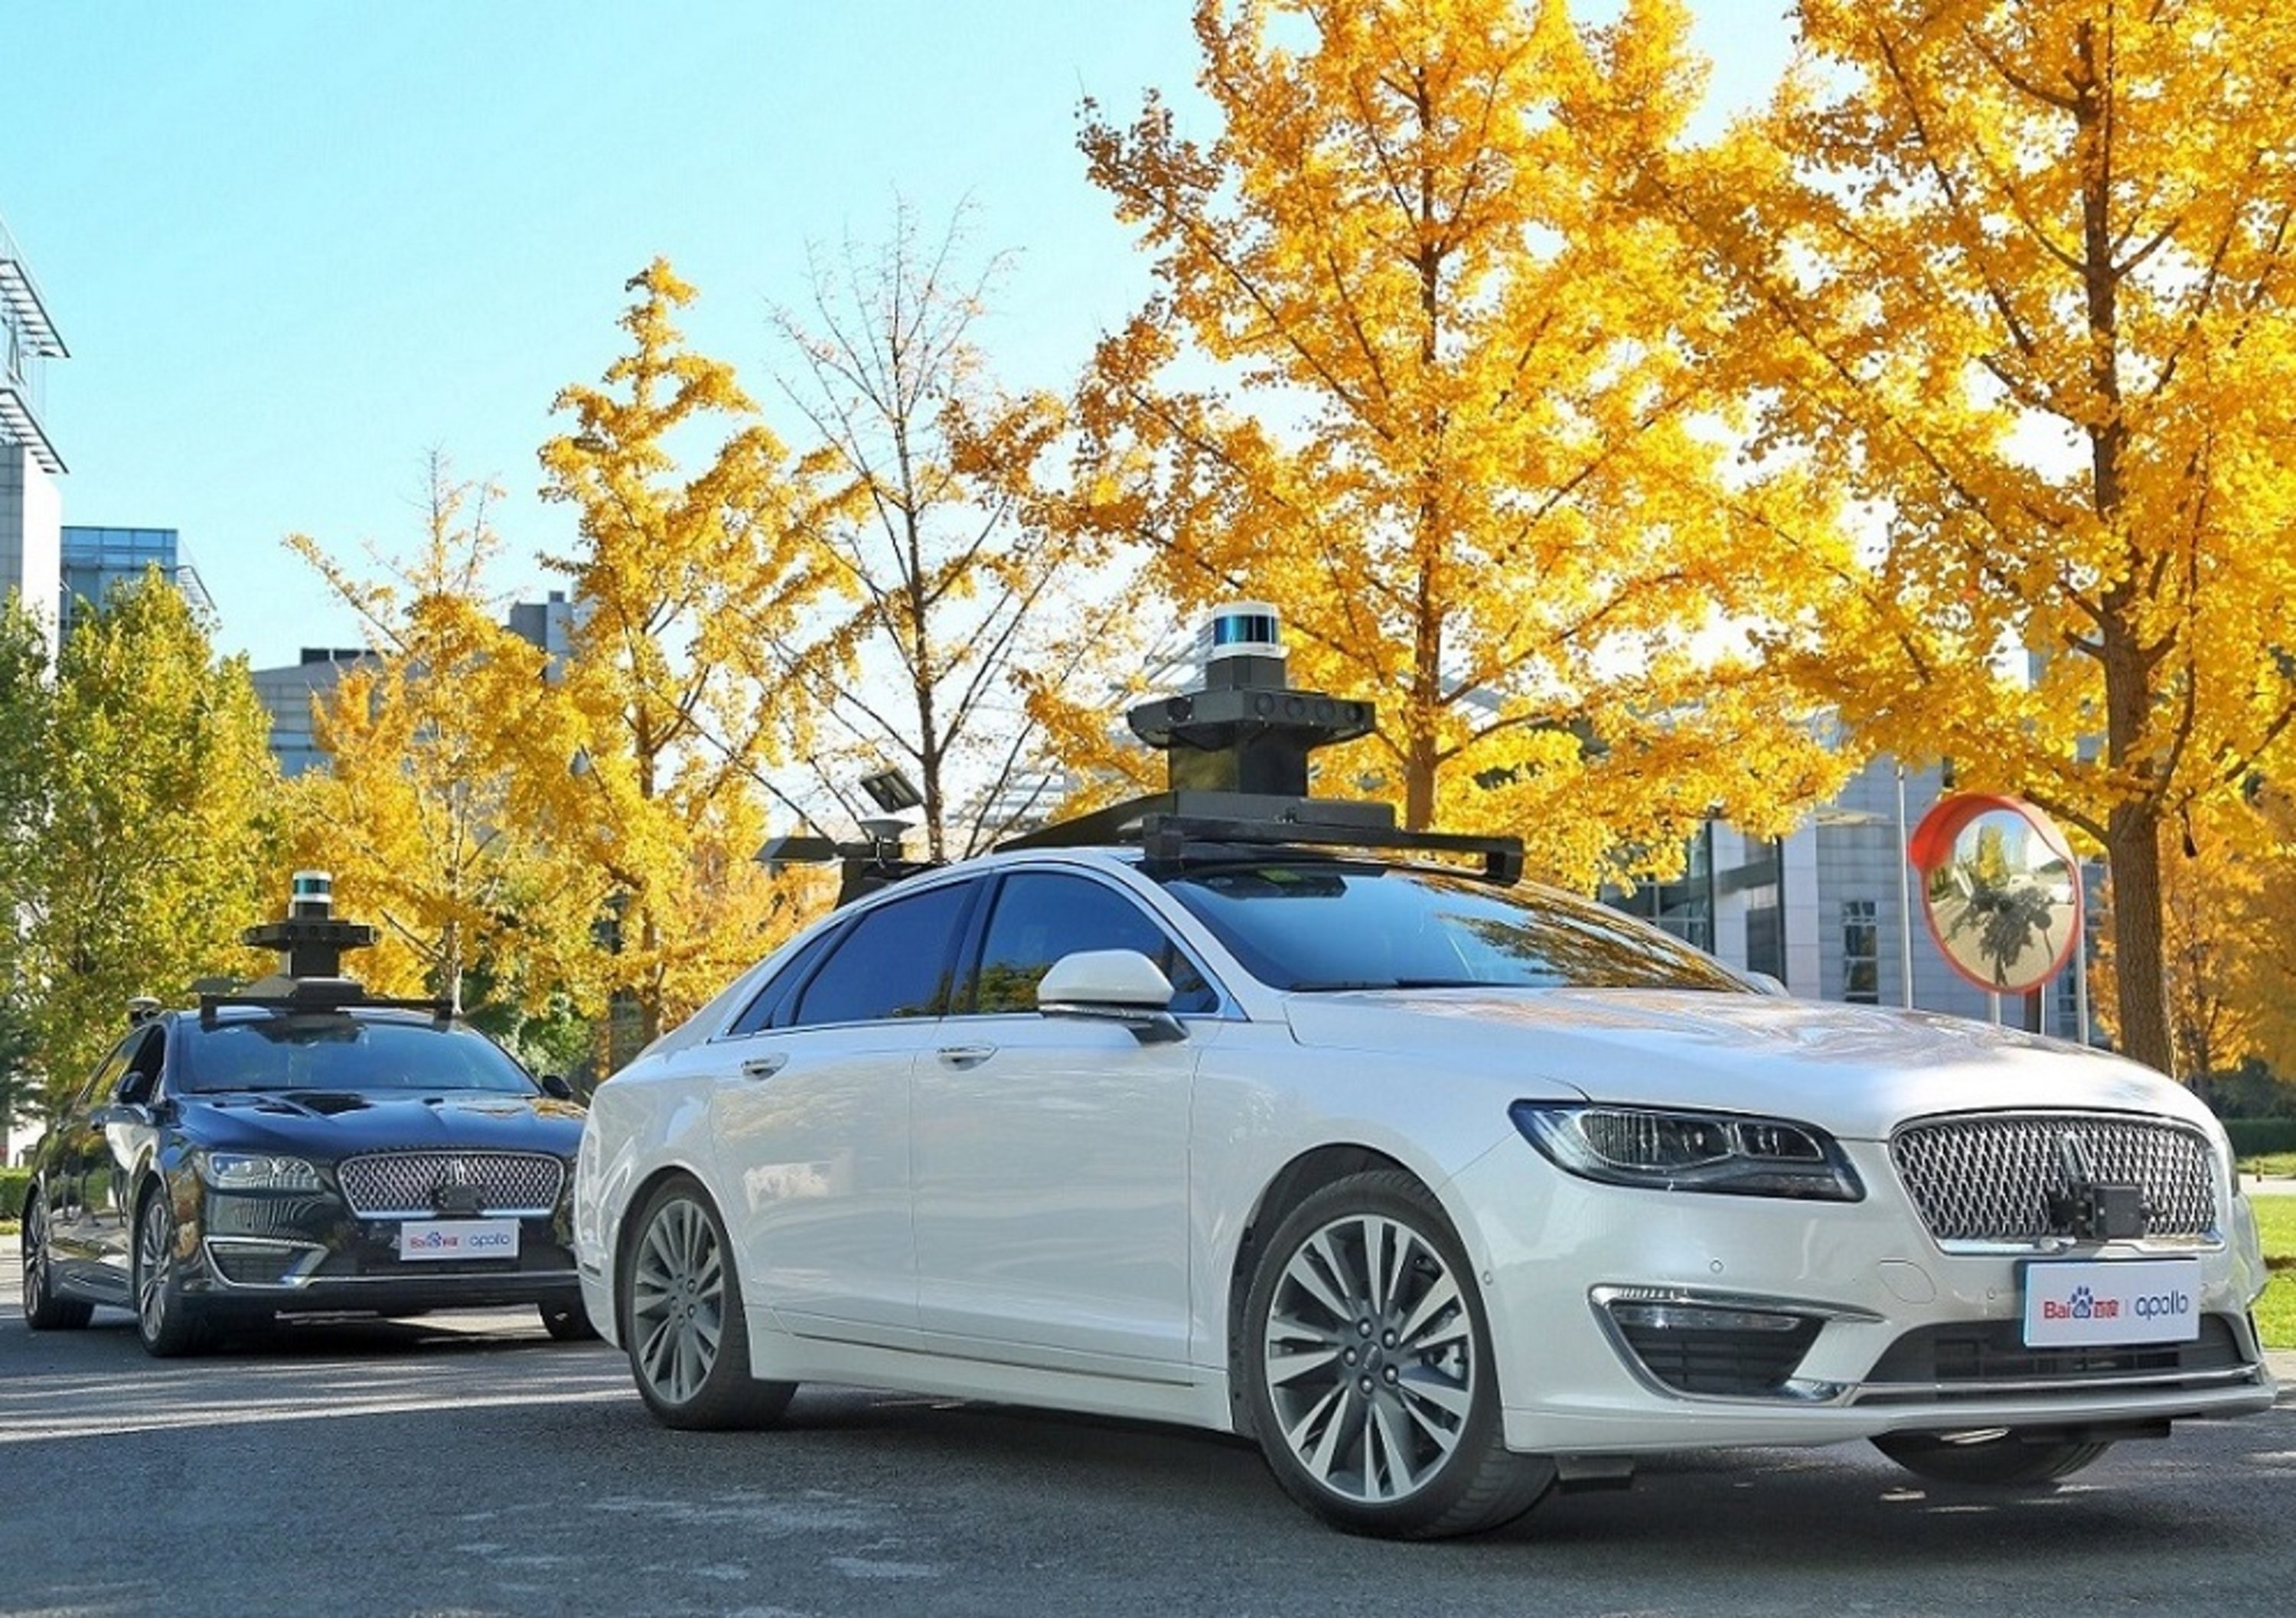 Guida autonoma: Ford si allea con Baidu